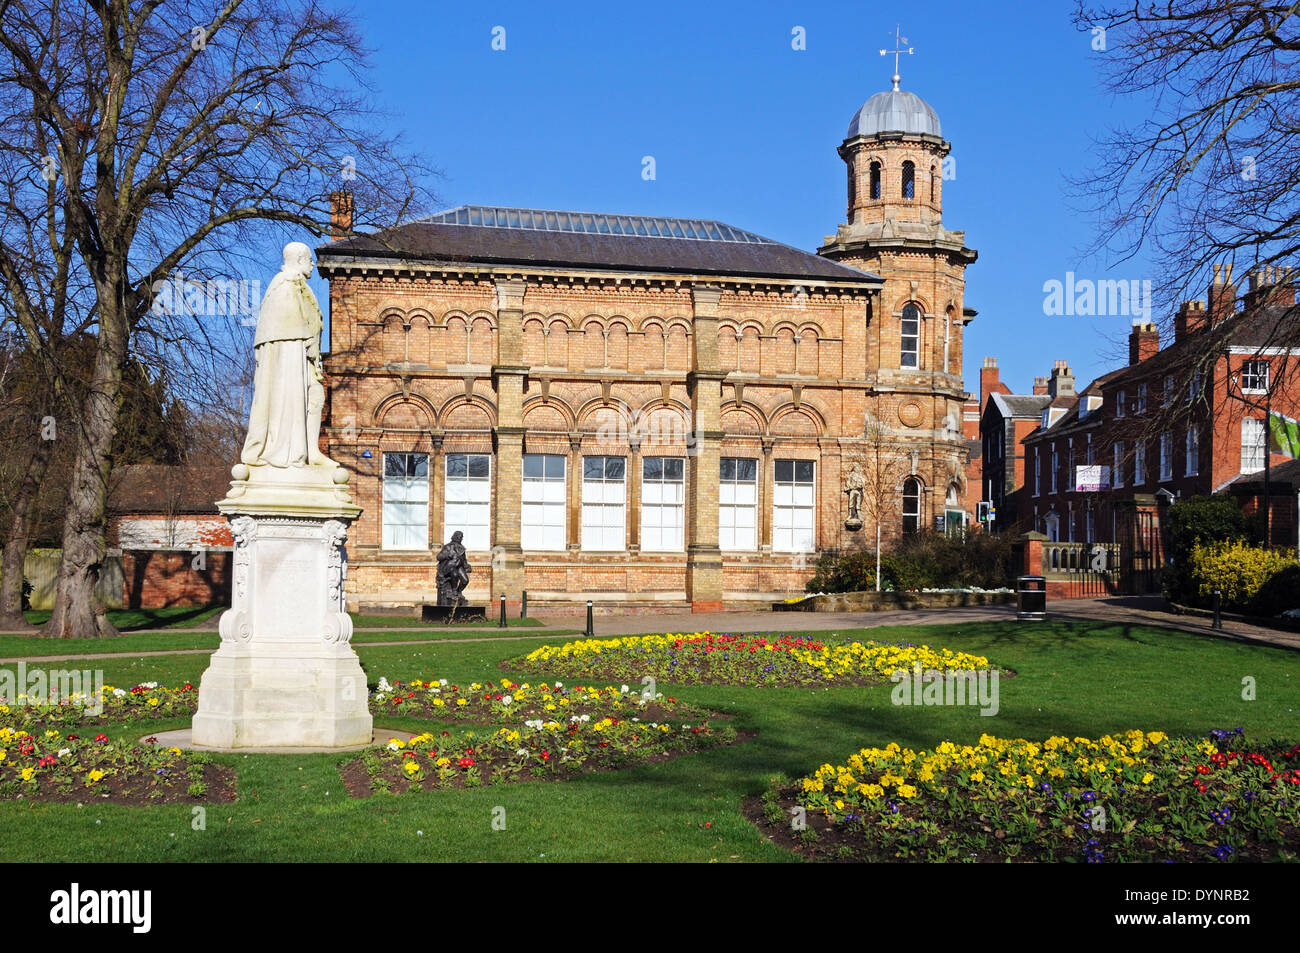 Estatua del rey Edward VII con el antiguo edificio de la biblioteca en la parte trasera, Beacon Park, Lichfield, Staffordshire, Inglaterra, Reino Unido, Europa Occidental. Foto de stock